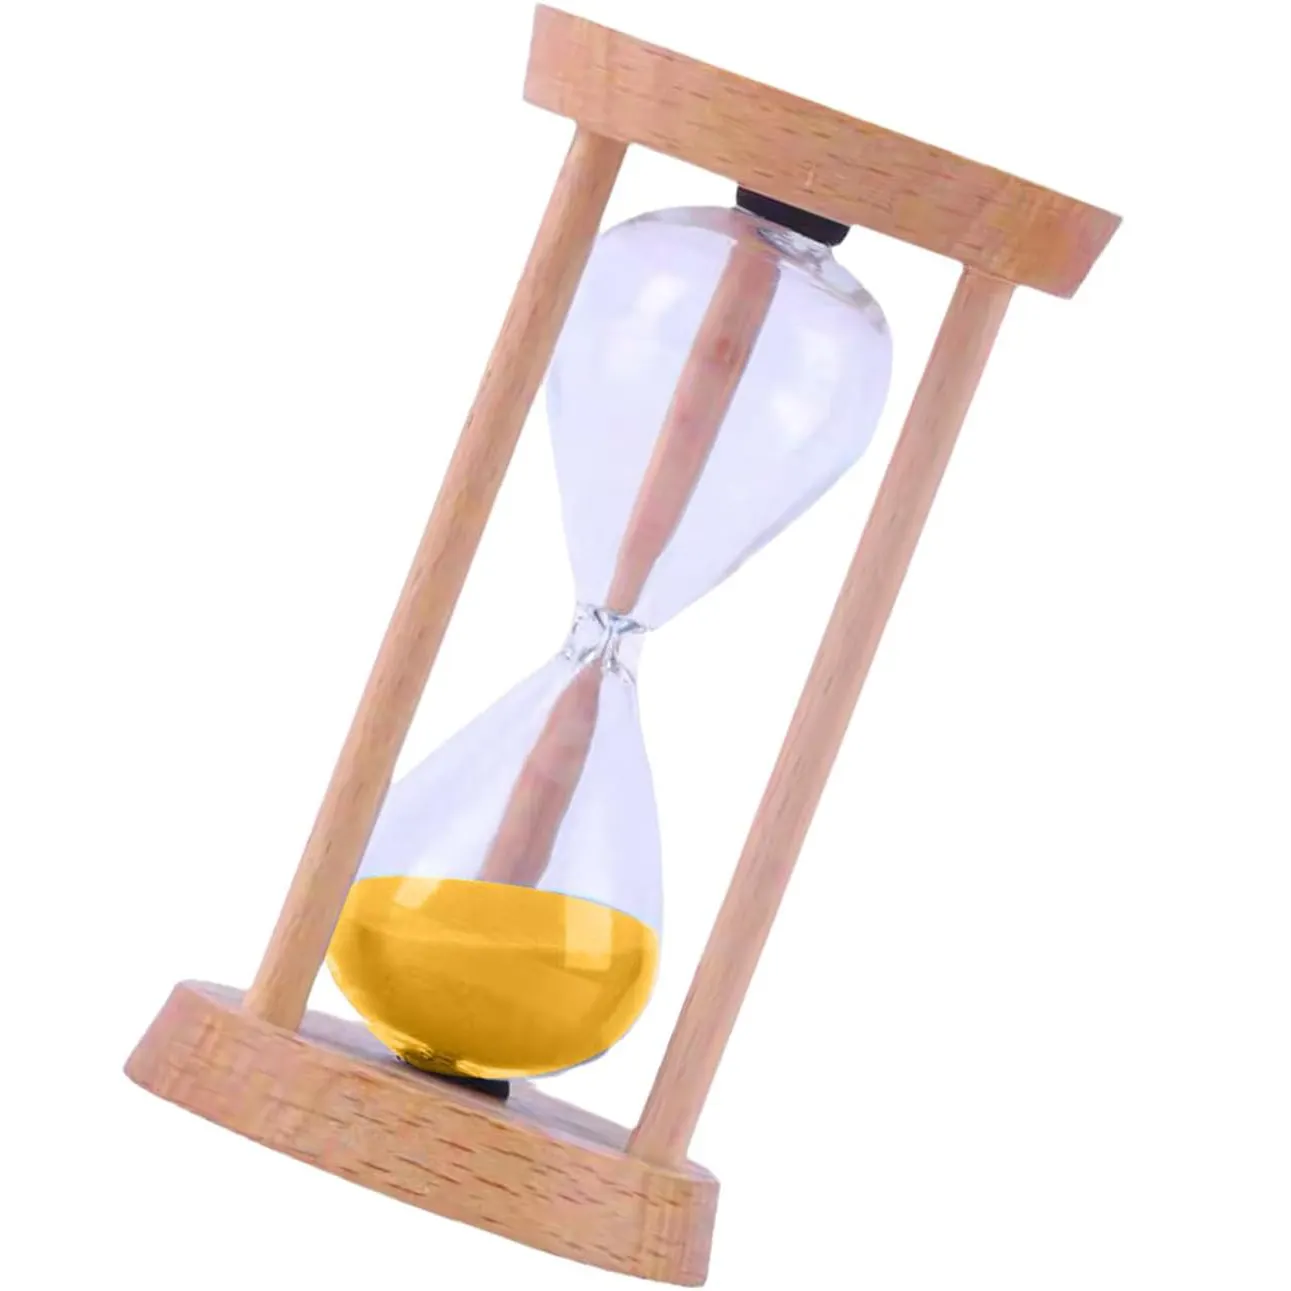 Đồng hồ cát bằng gỗ hẹn giờ đồng hồ cát 5 PHÚT & đồng hồ cát kim loại 5 phút, đồng hồ cát thủy tinh giờ cho văn phòng nhà bàn